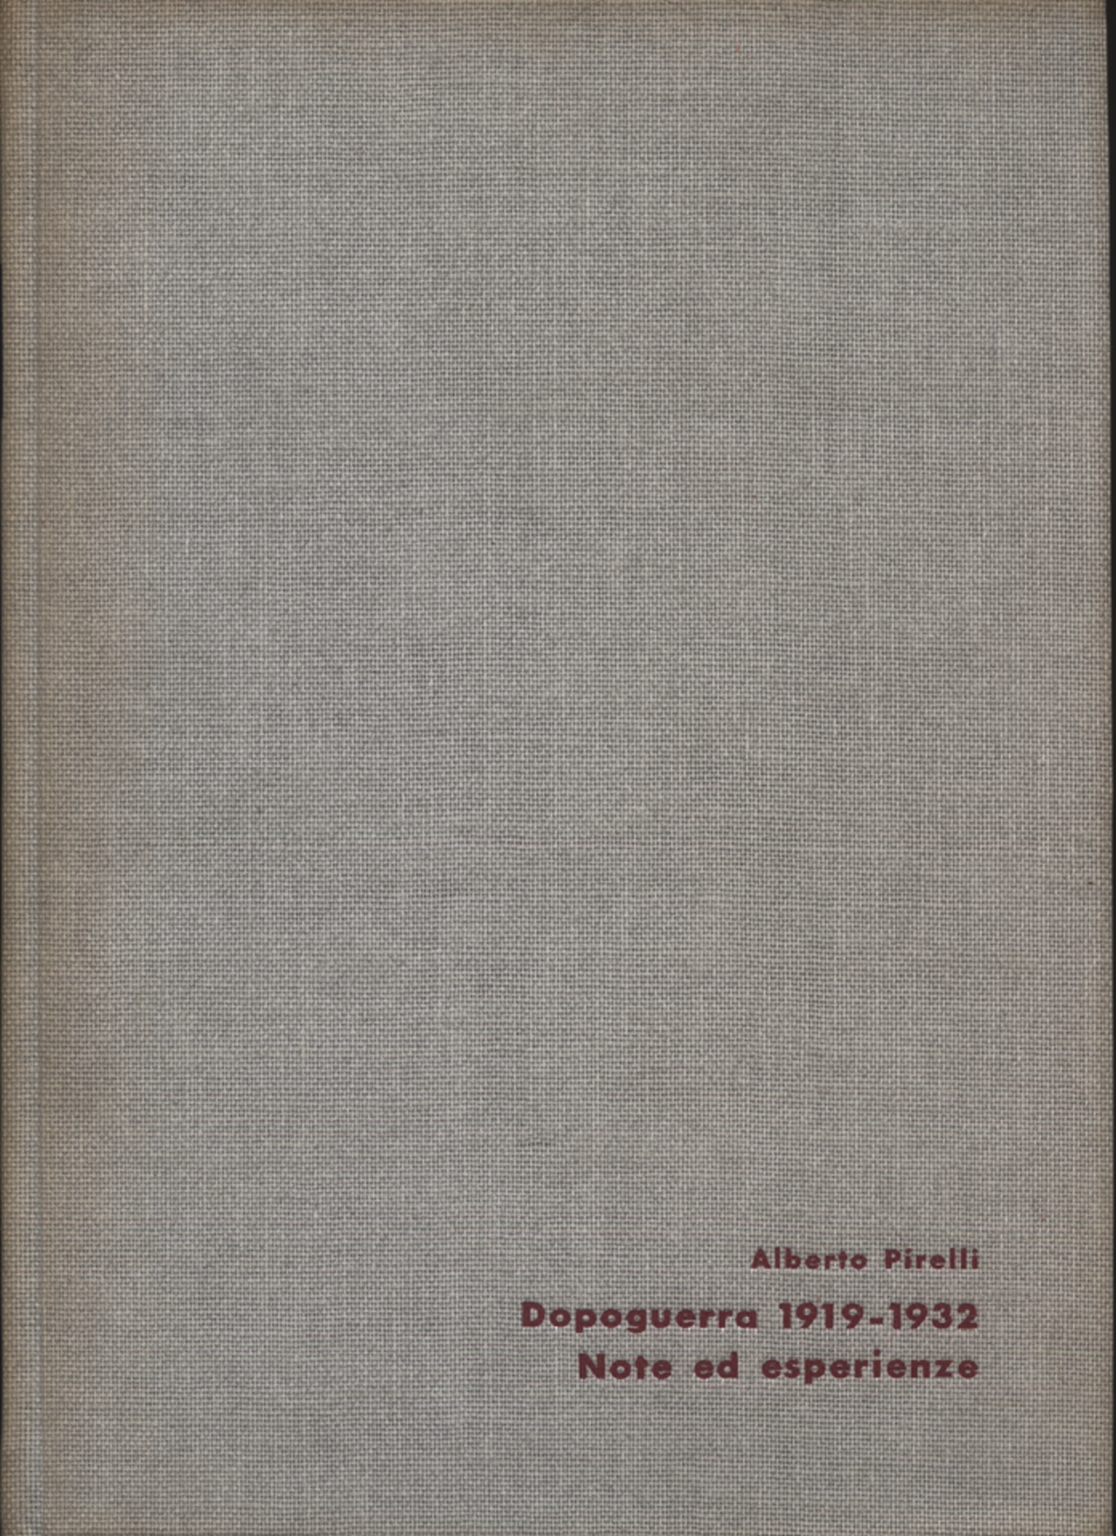 Nachkriegszeit 1919-1932, Alberto Pirelli